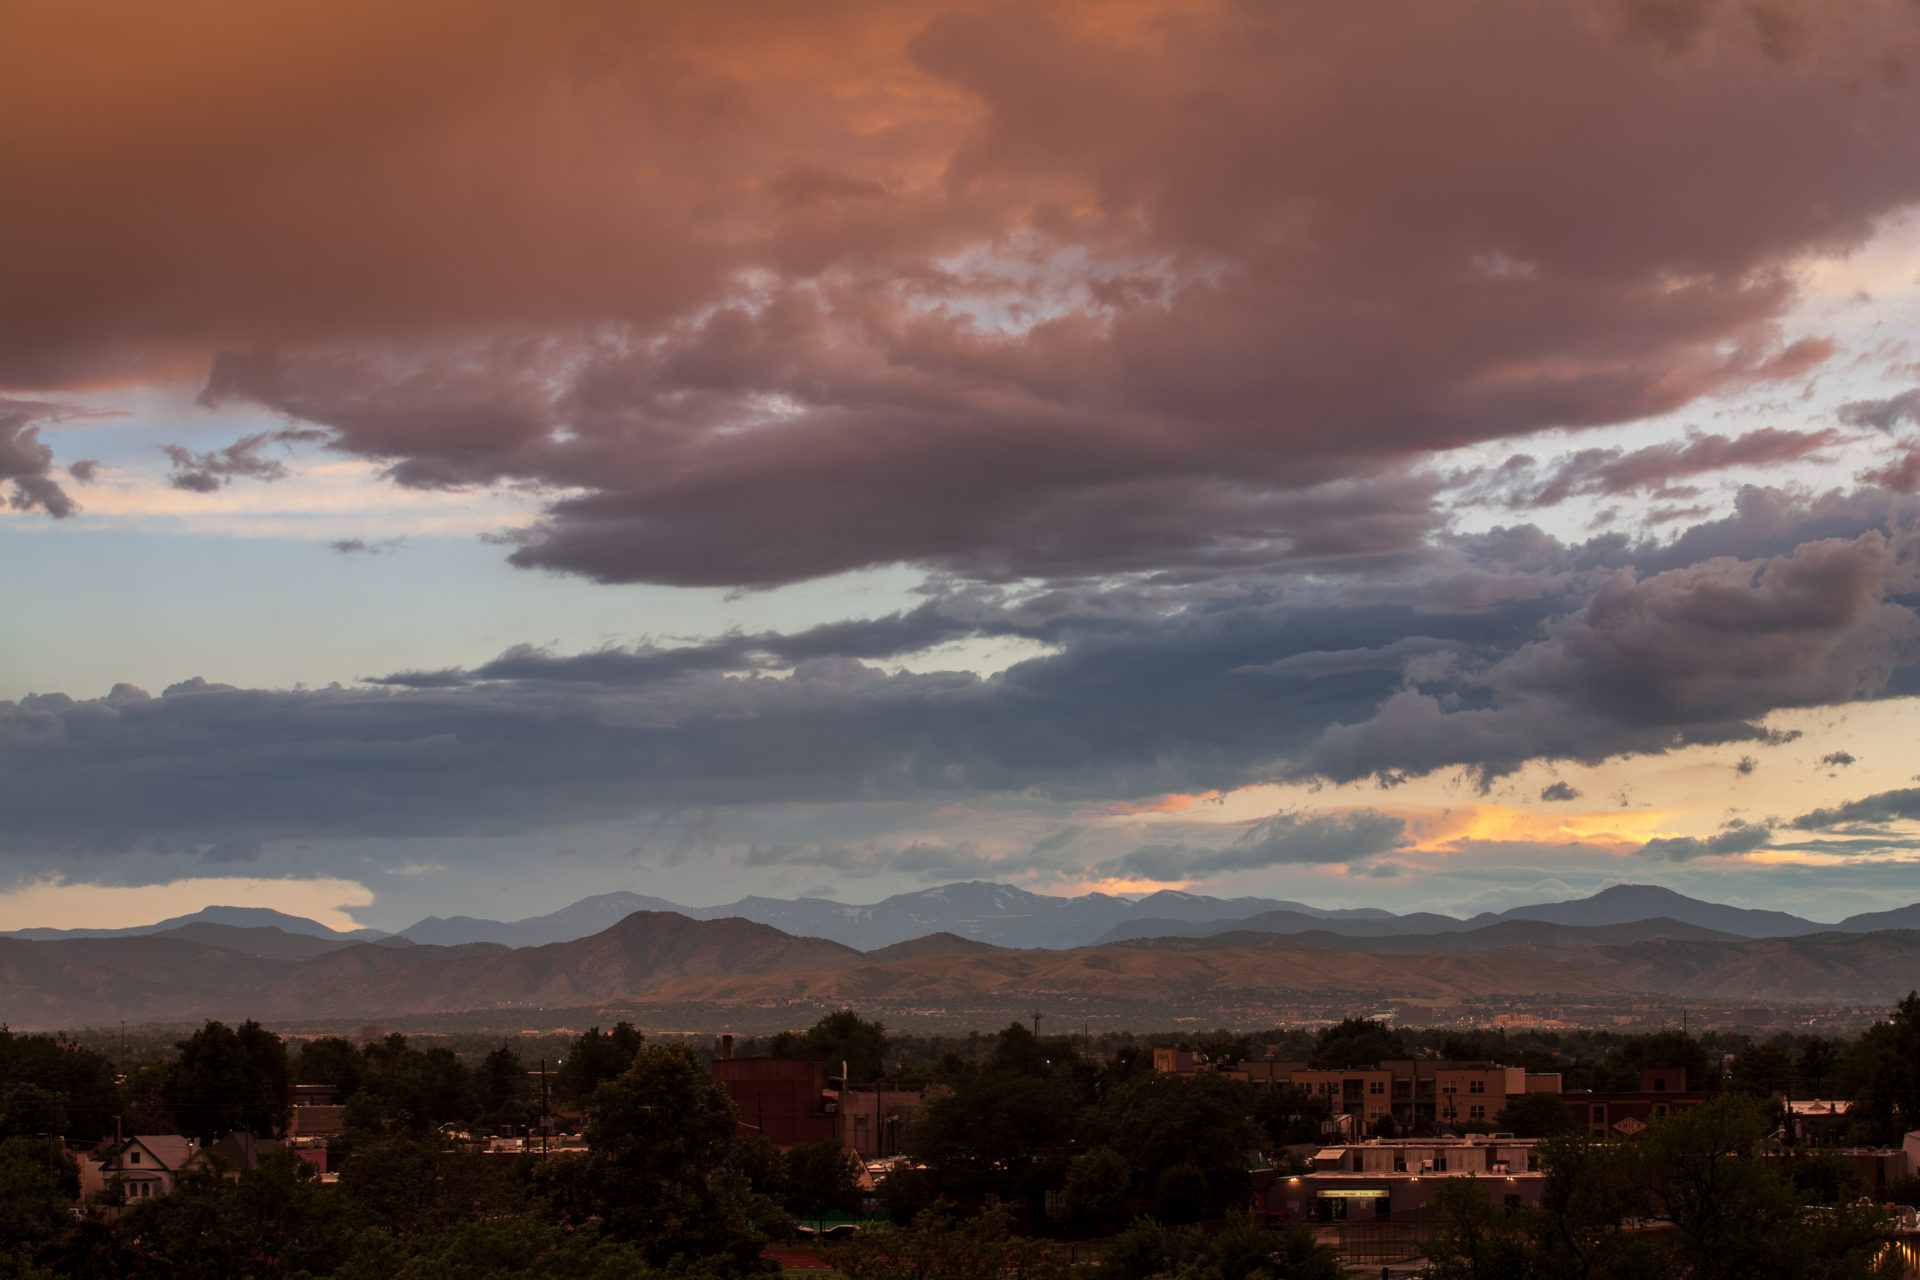 Mount Evans sunset - July 8, 2011